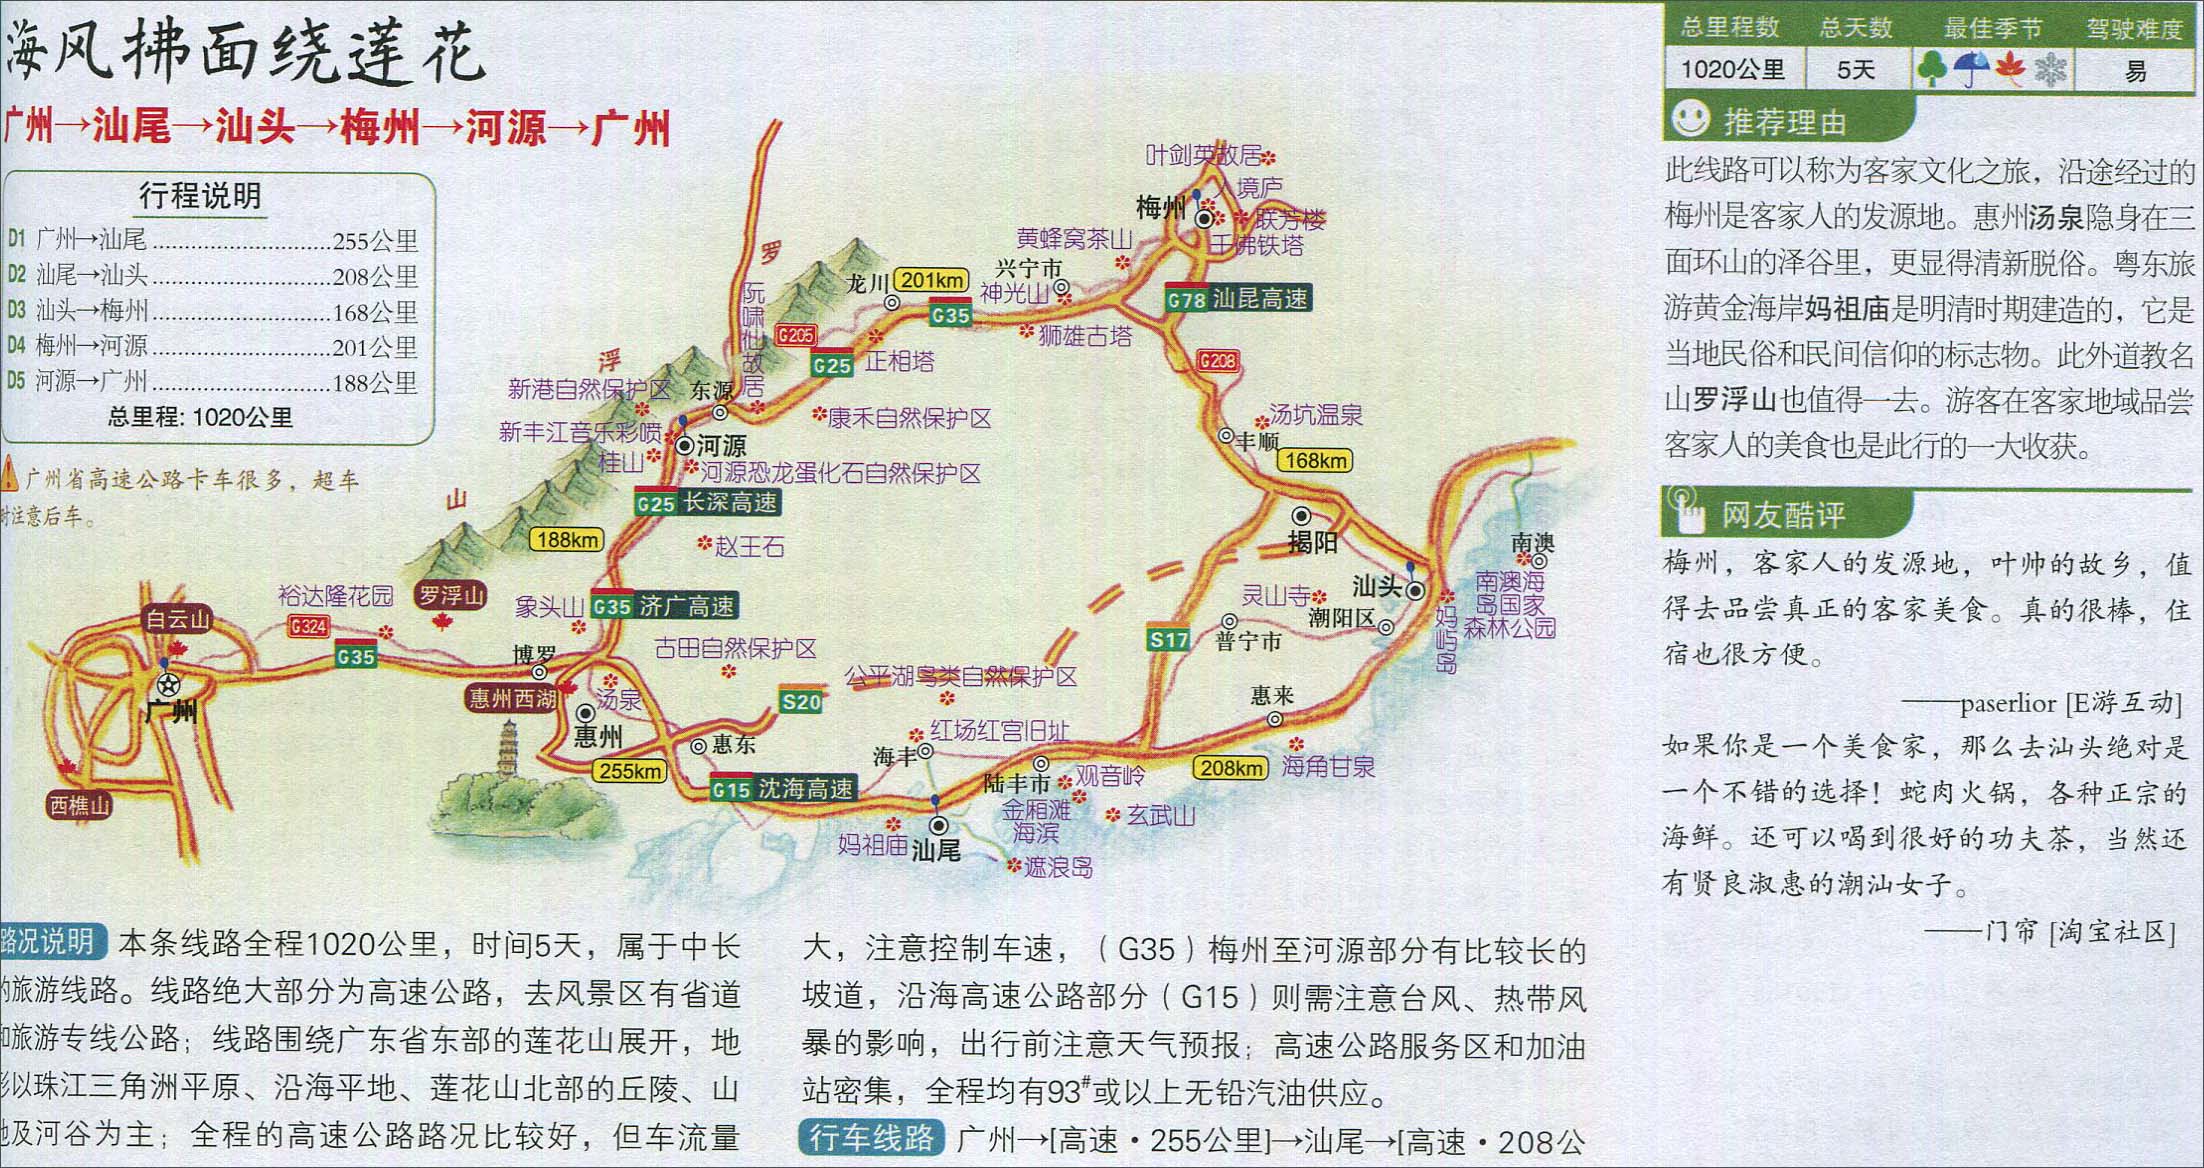 广州至梅州自驾游路线图_广东旅游地图库_地图窝图片